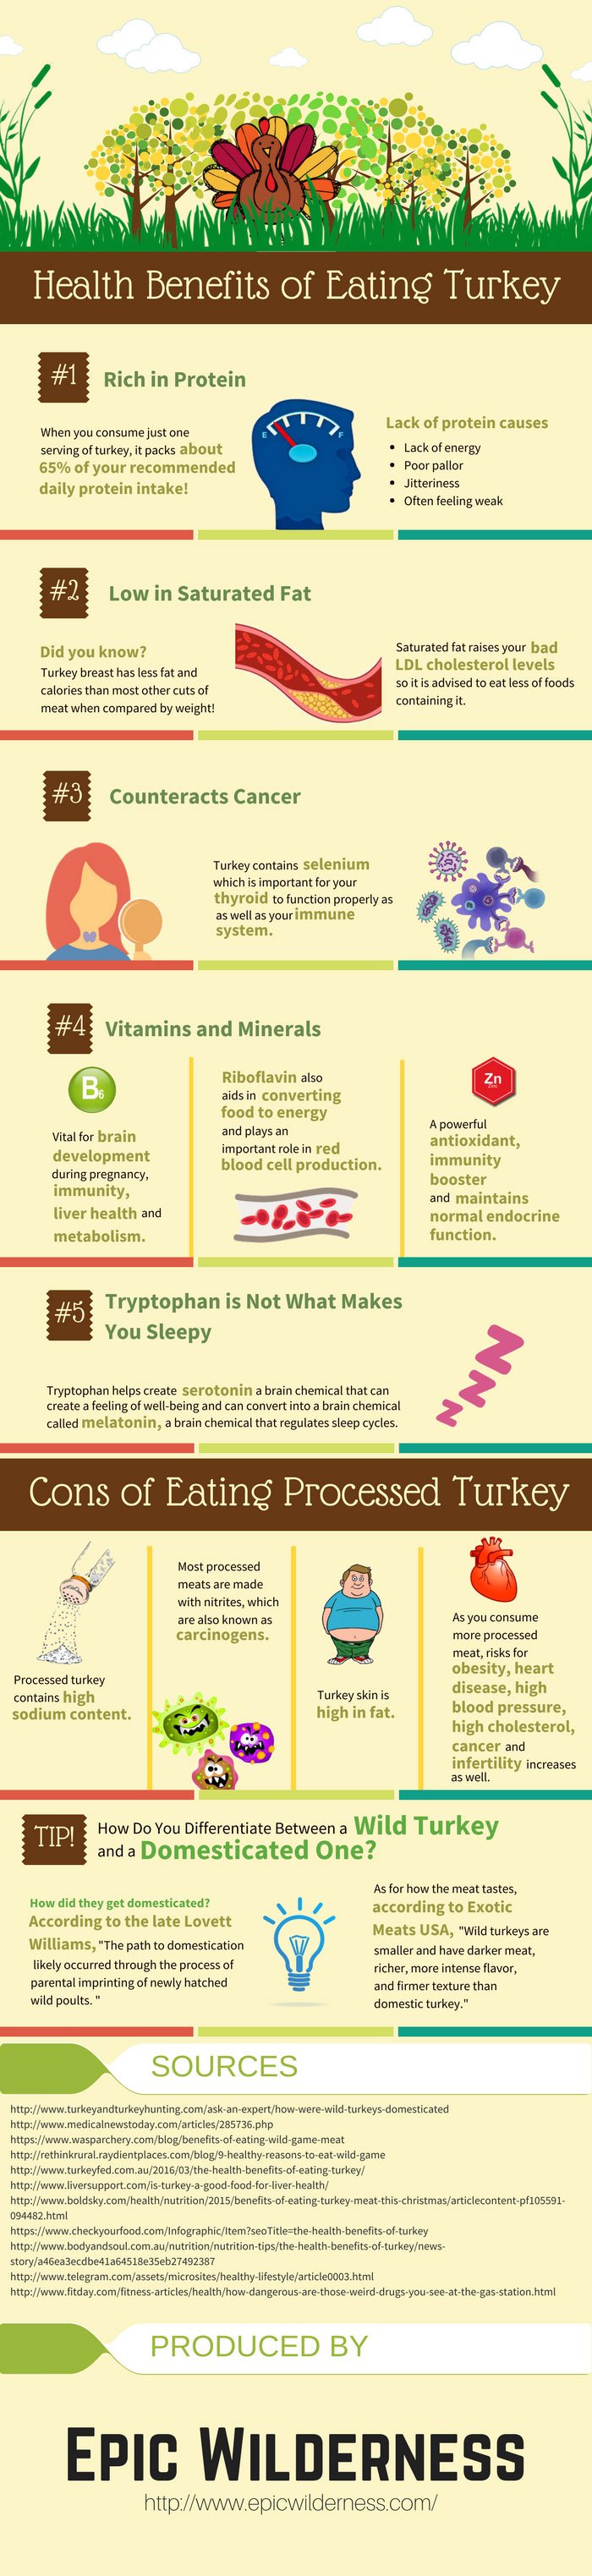 Eating Wild Turkey Health Benefits.jpg